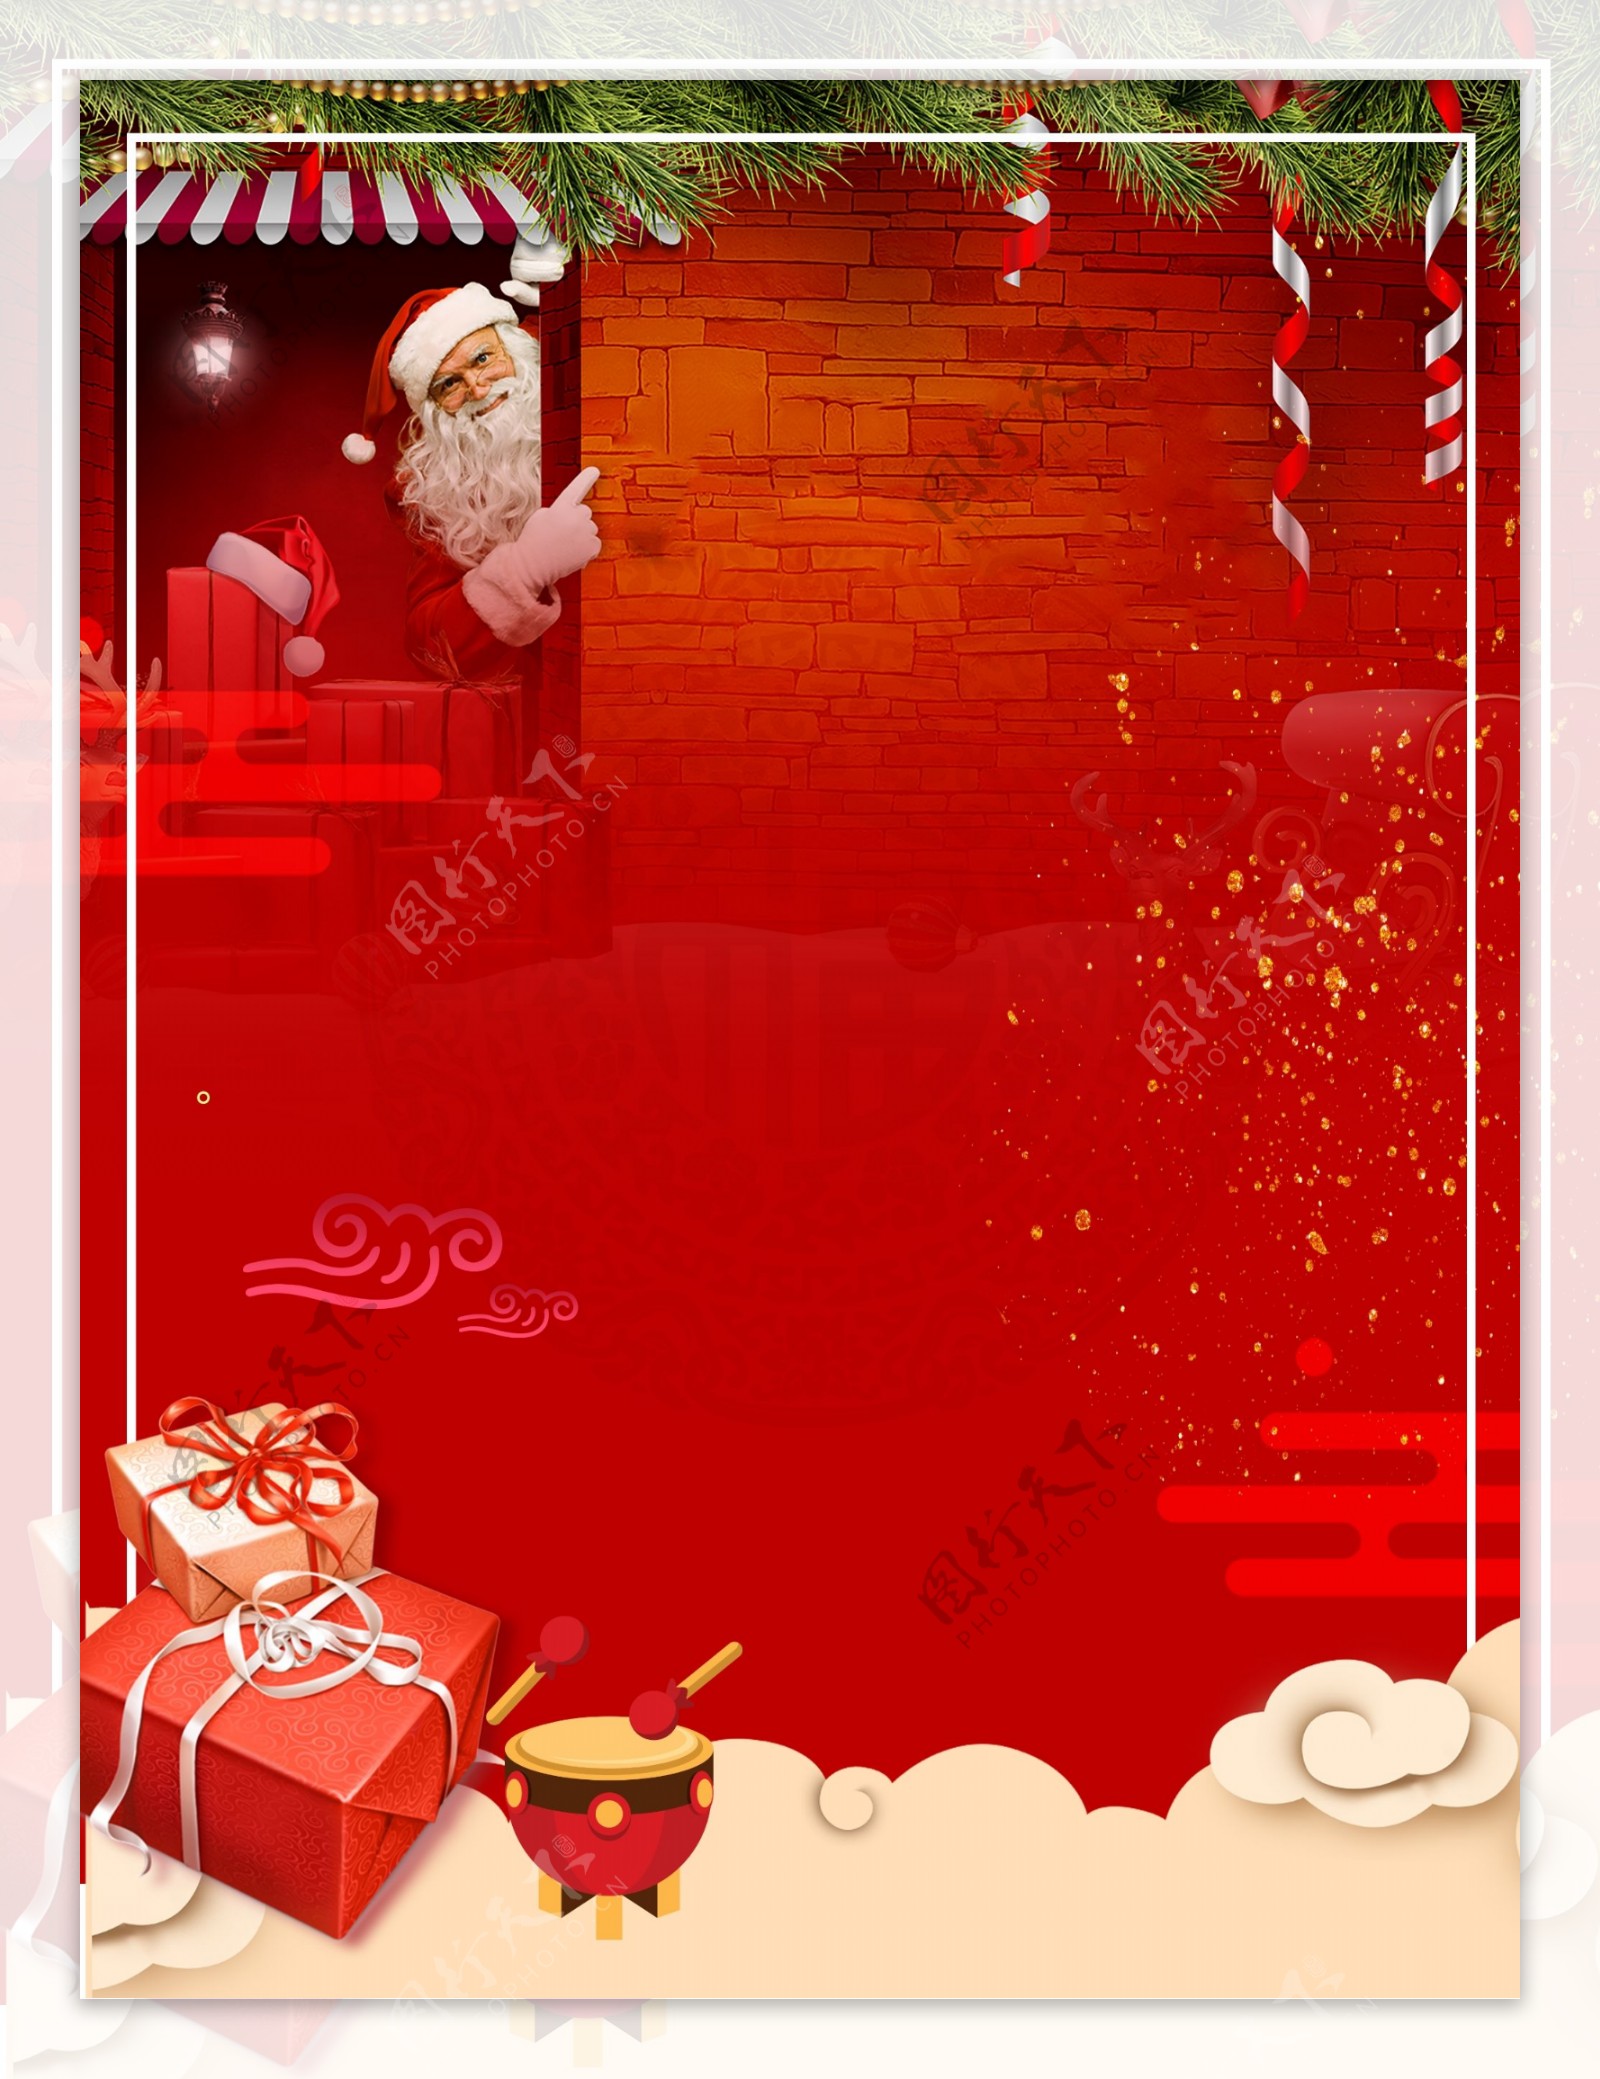 红金色大气圣诞狂欢节日背景素材